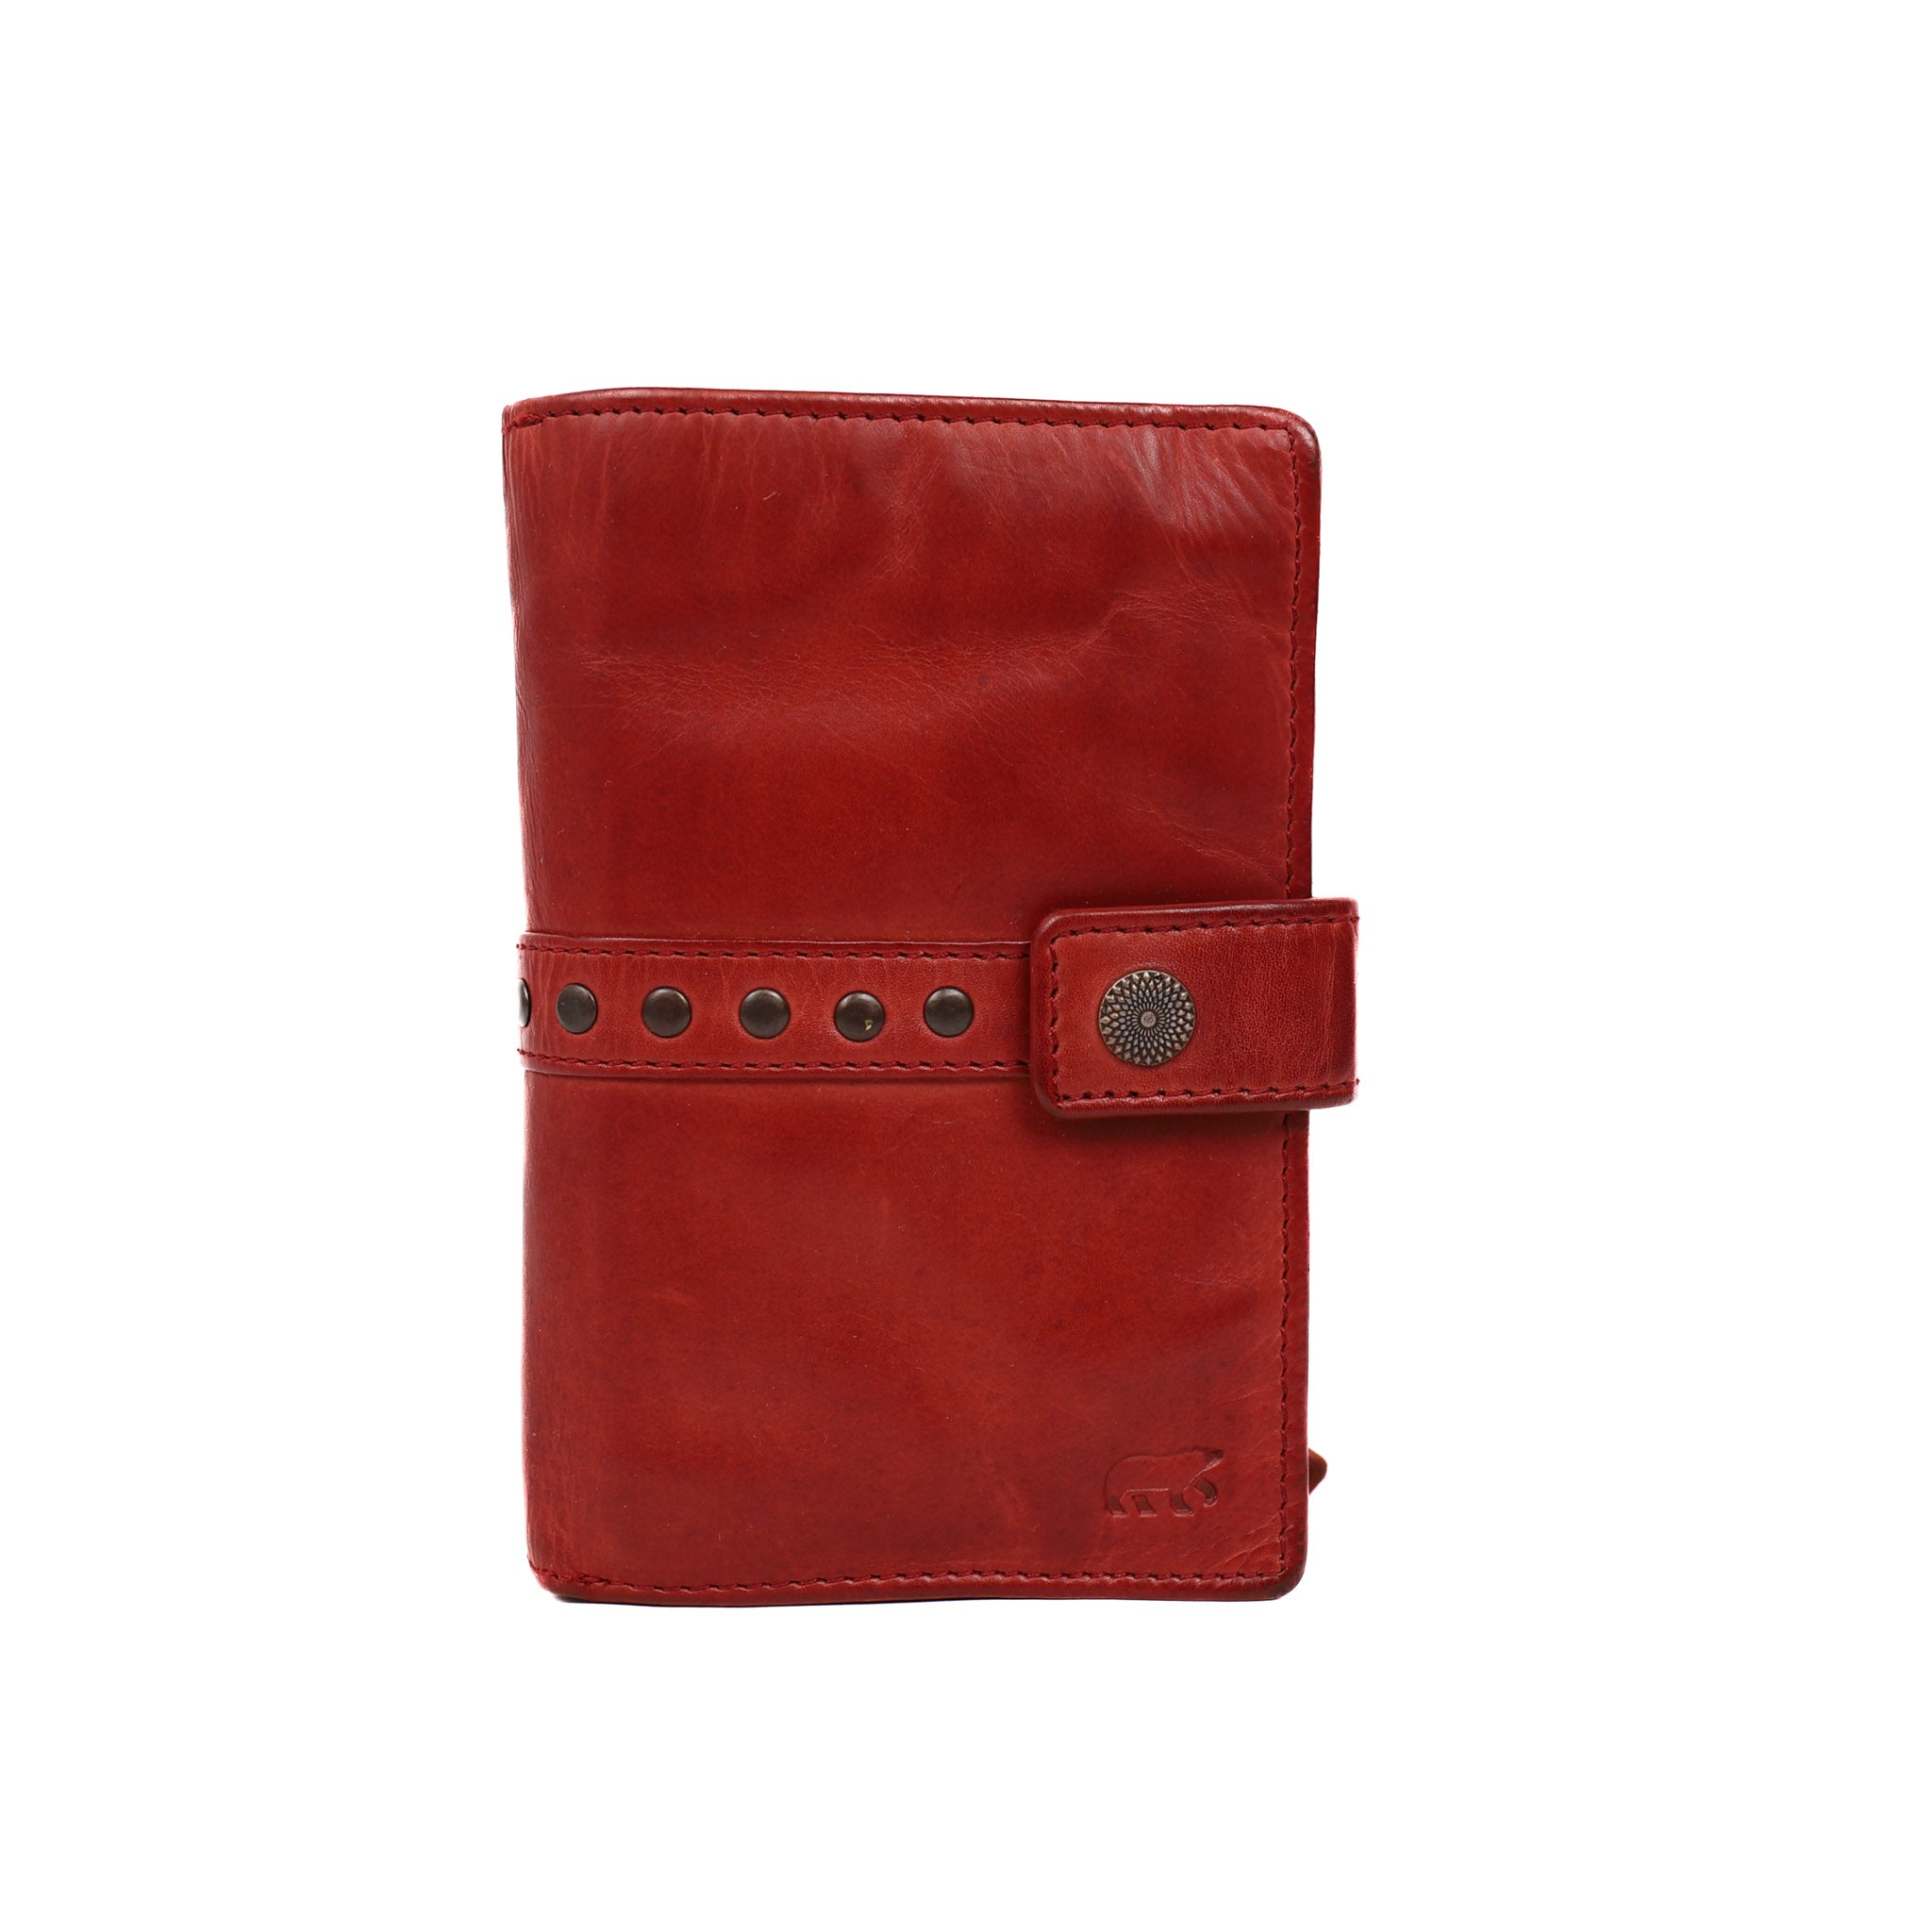 Geldbörse 'Sanne' mit roten Nieten - CL 15087